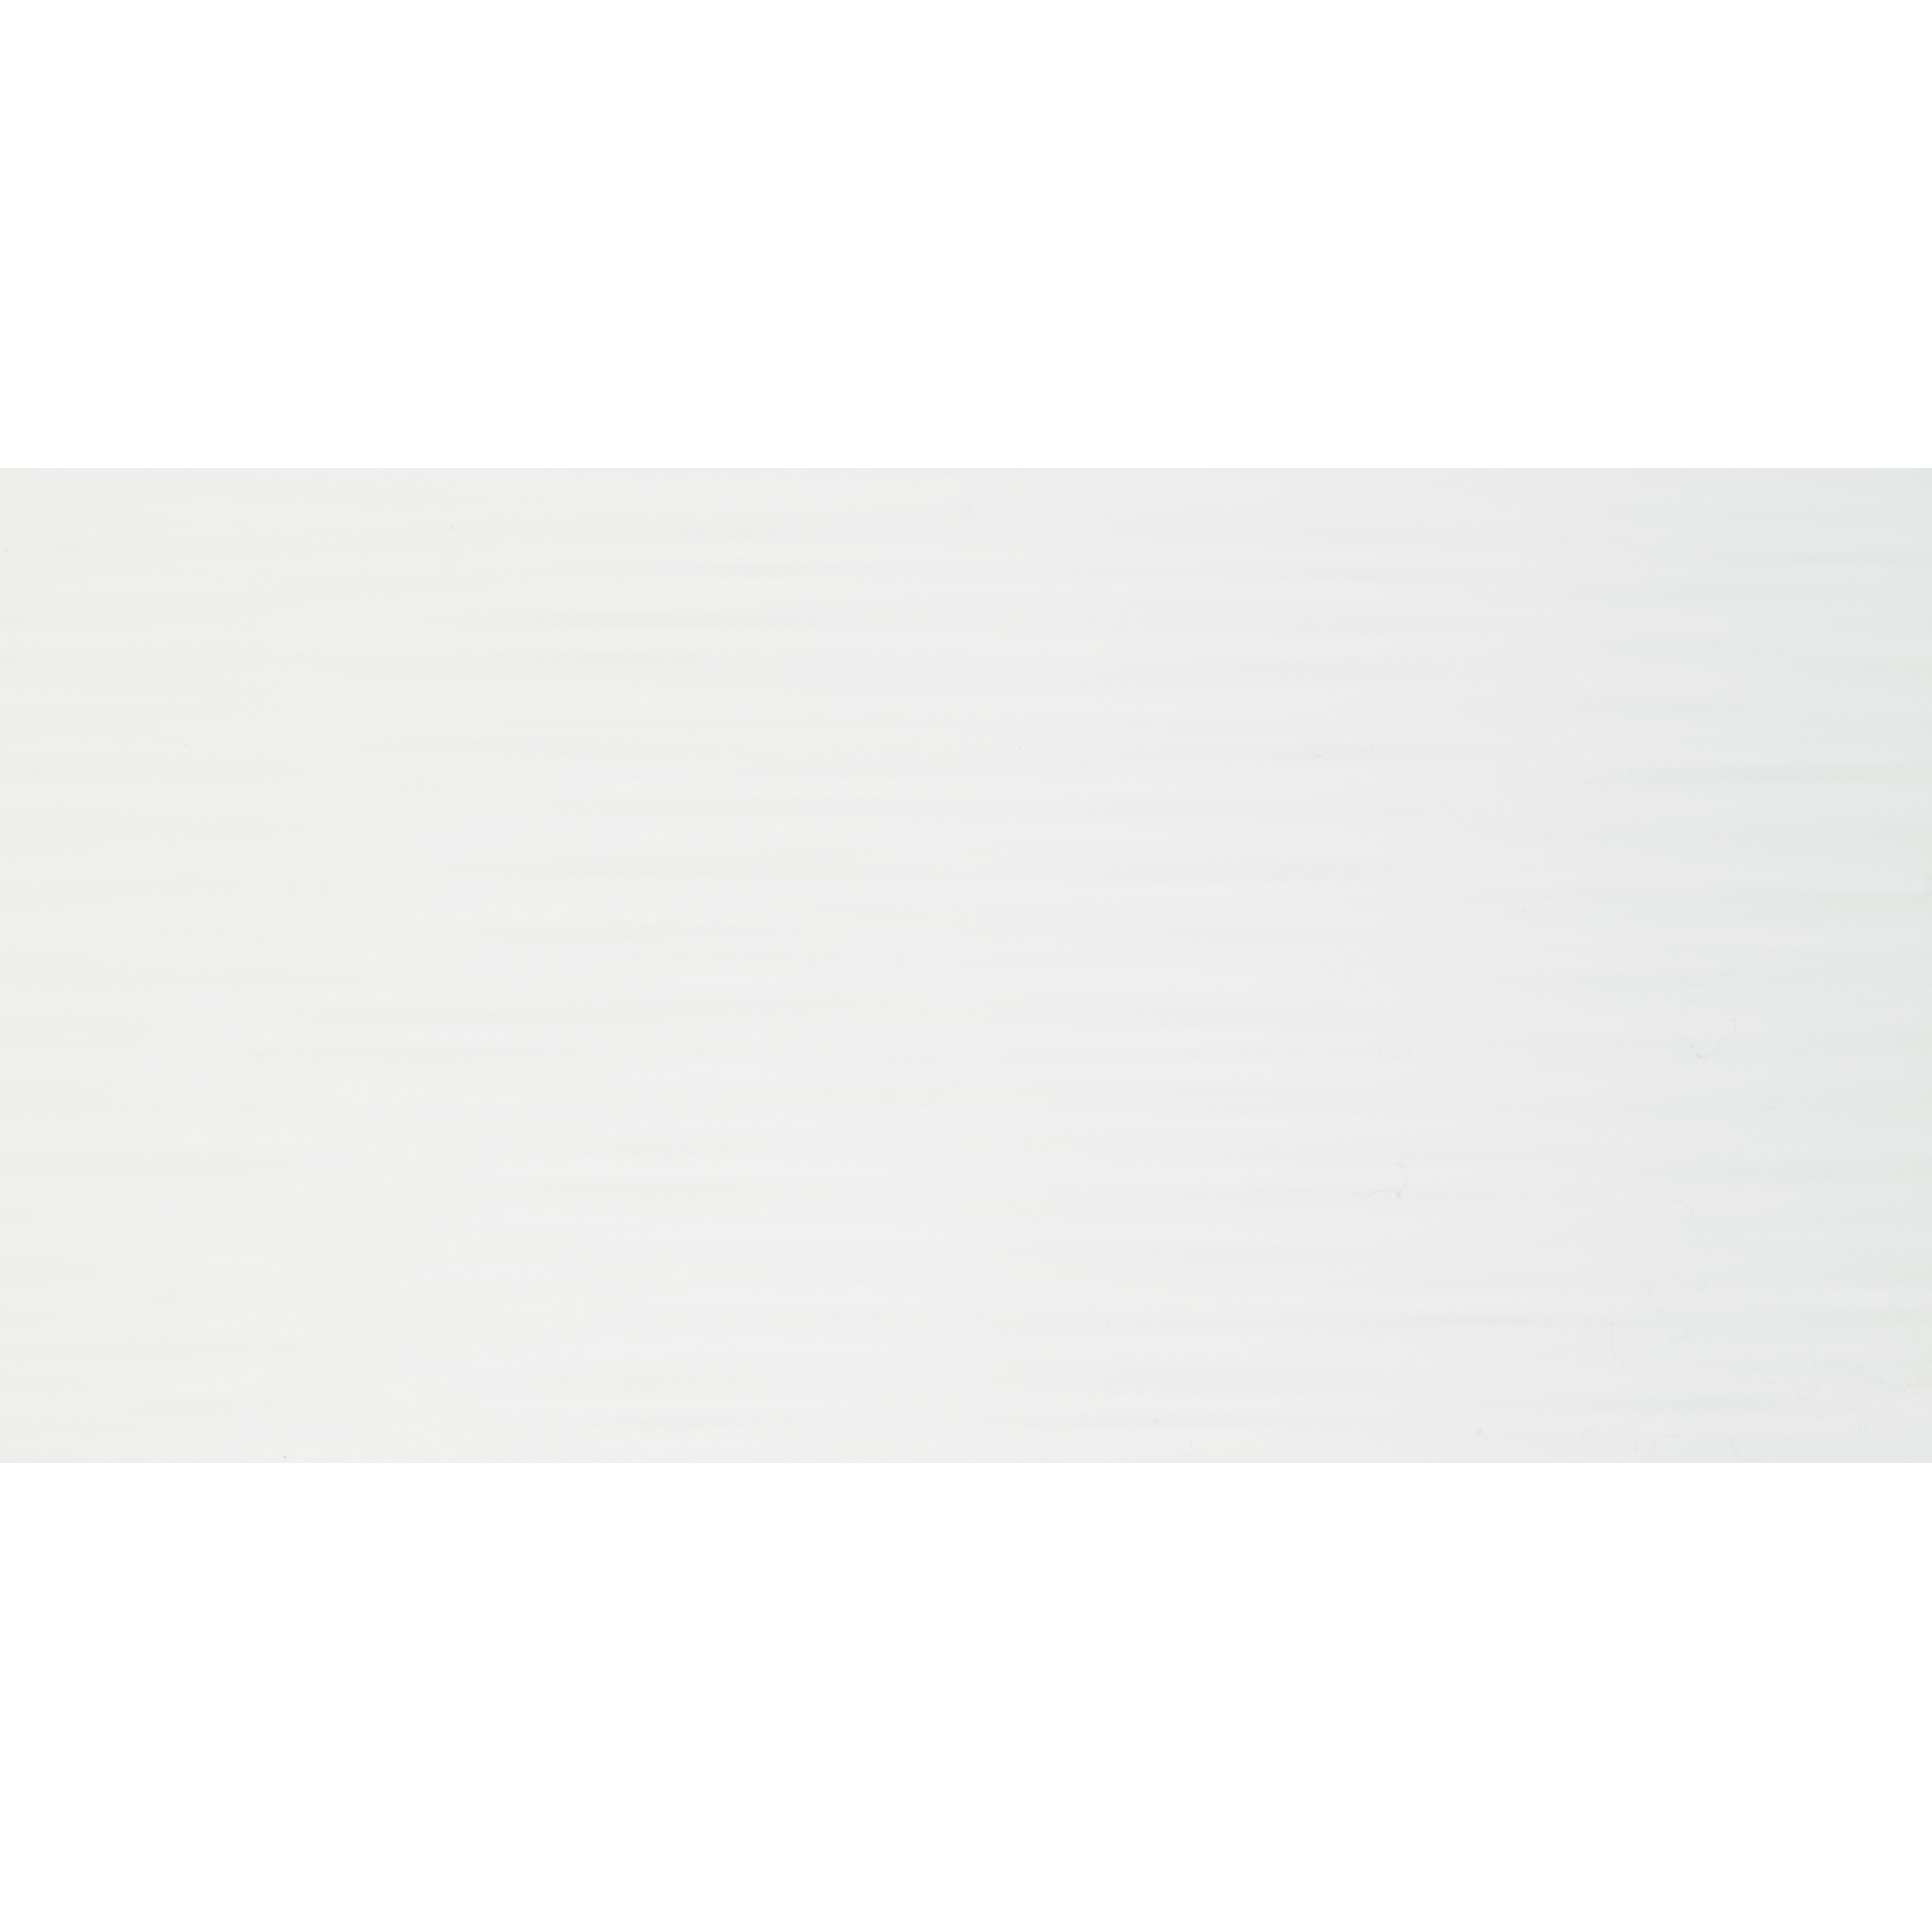 Wandfliese 'Wave' Steingut 30 x 60 cm weiß gewellt + product picture